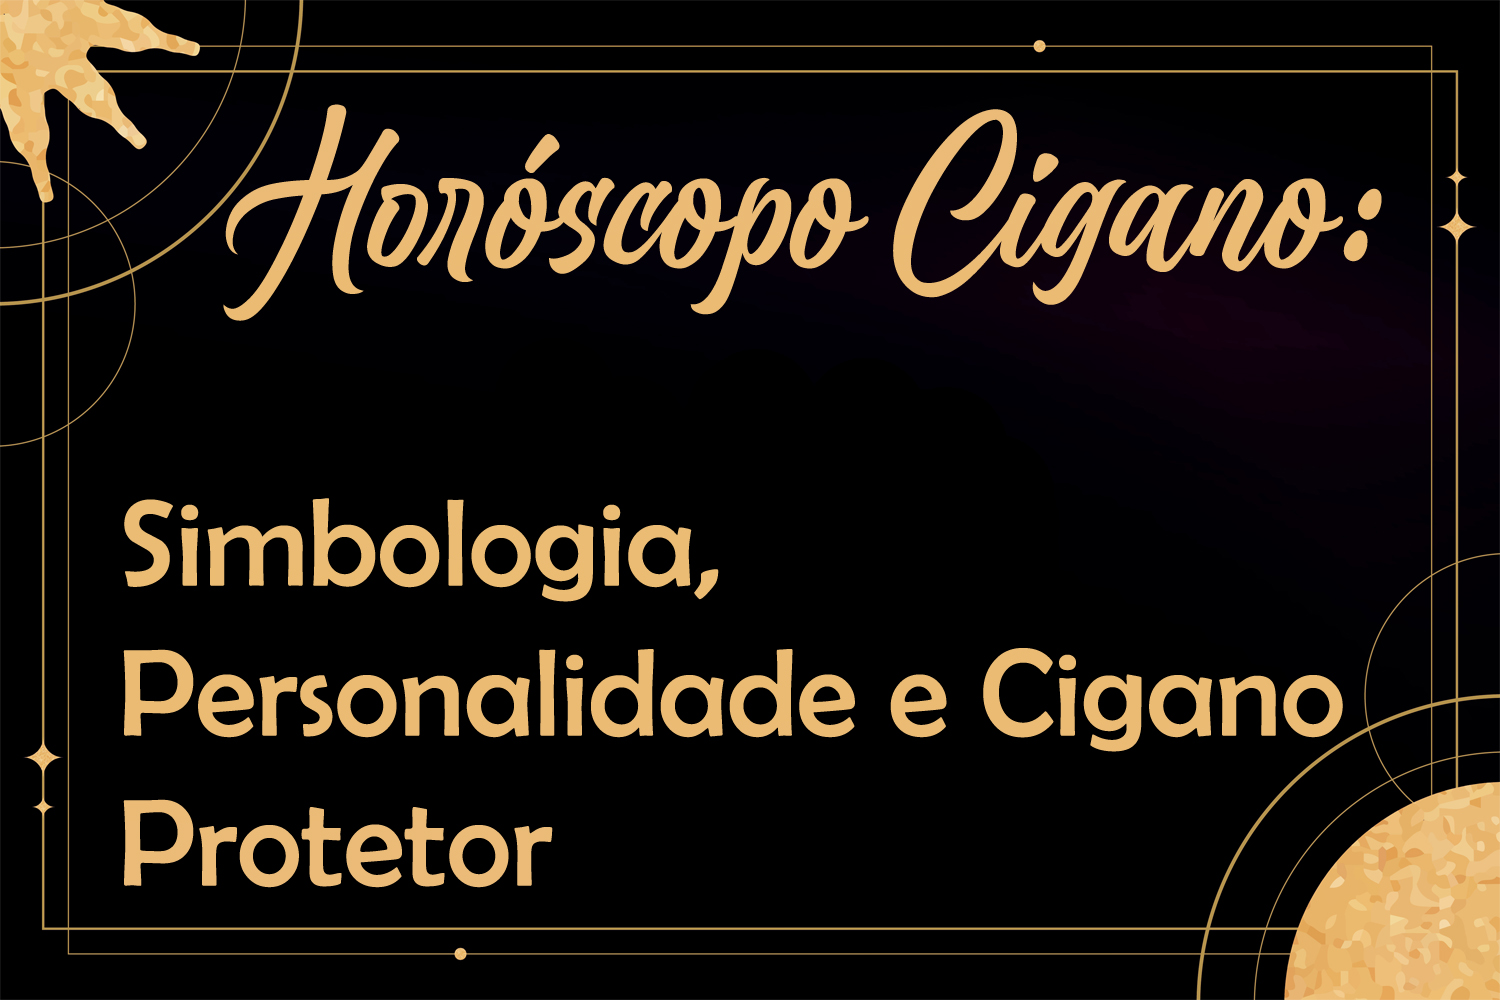 Horóscopo Cigano: Simbologia, Personalidade e Cigano Protetor